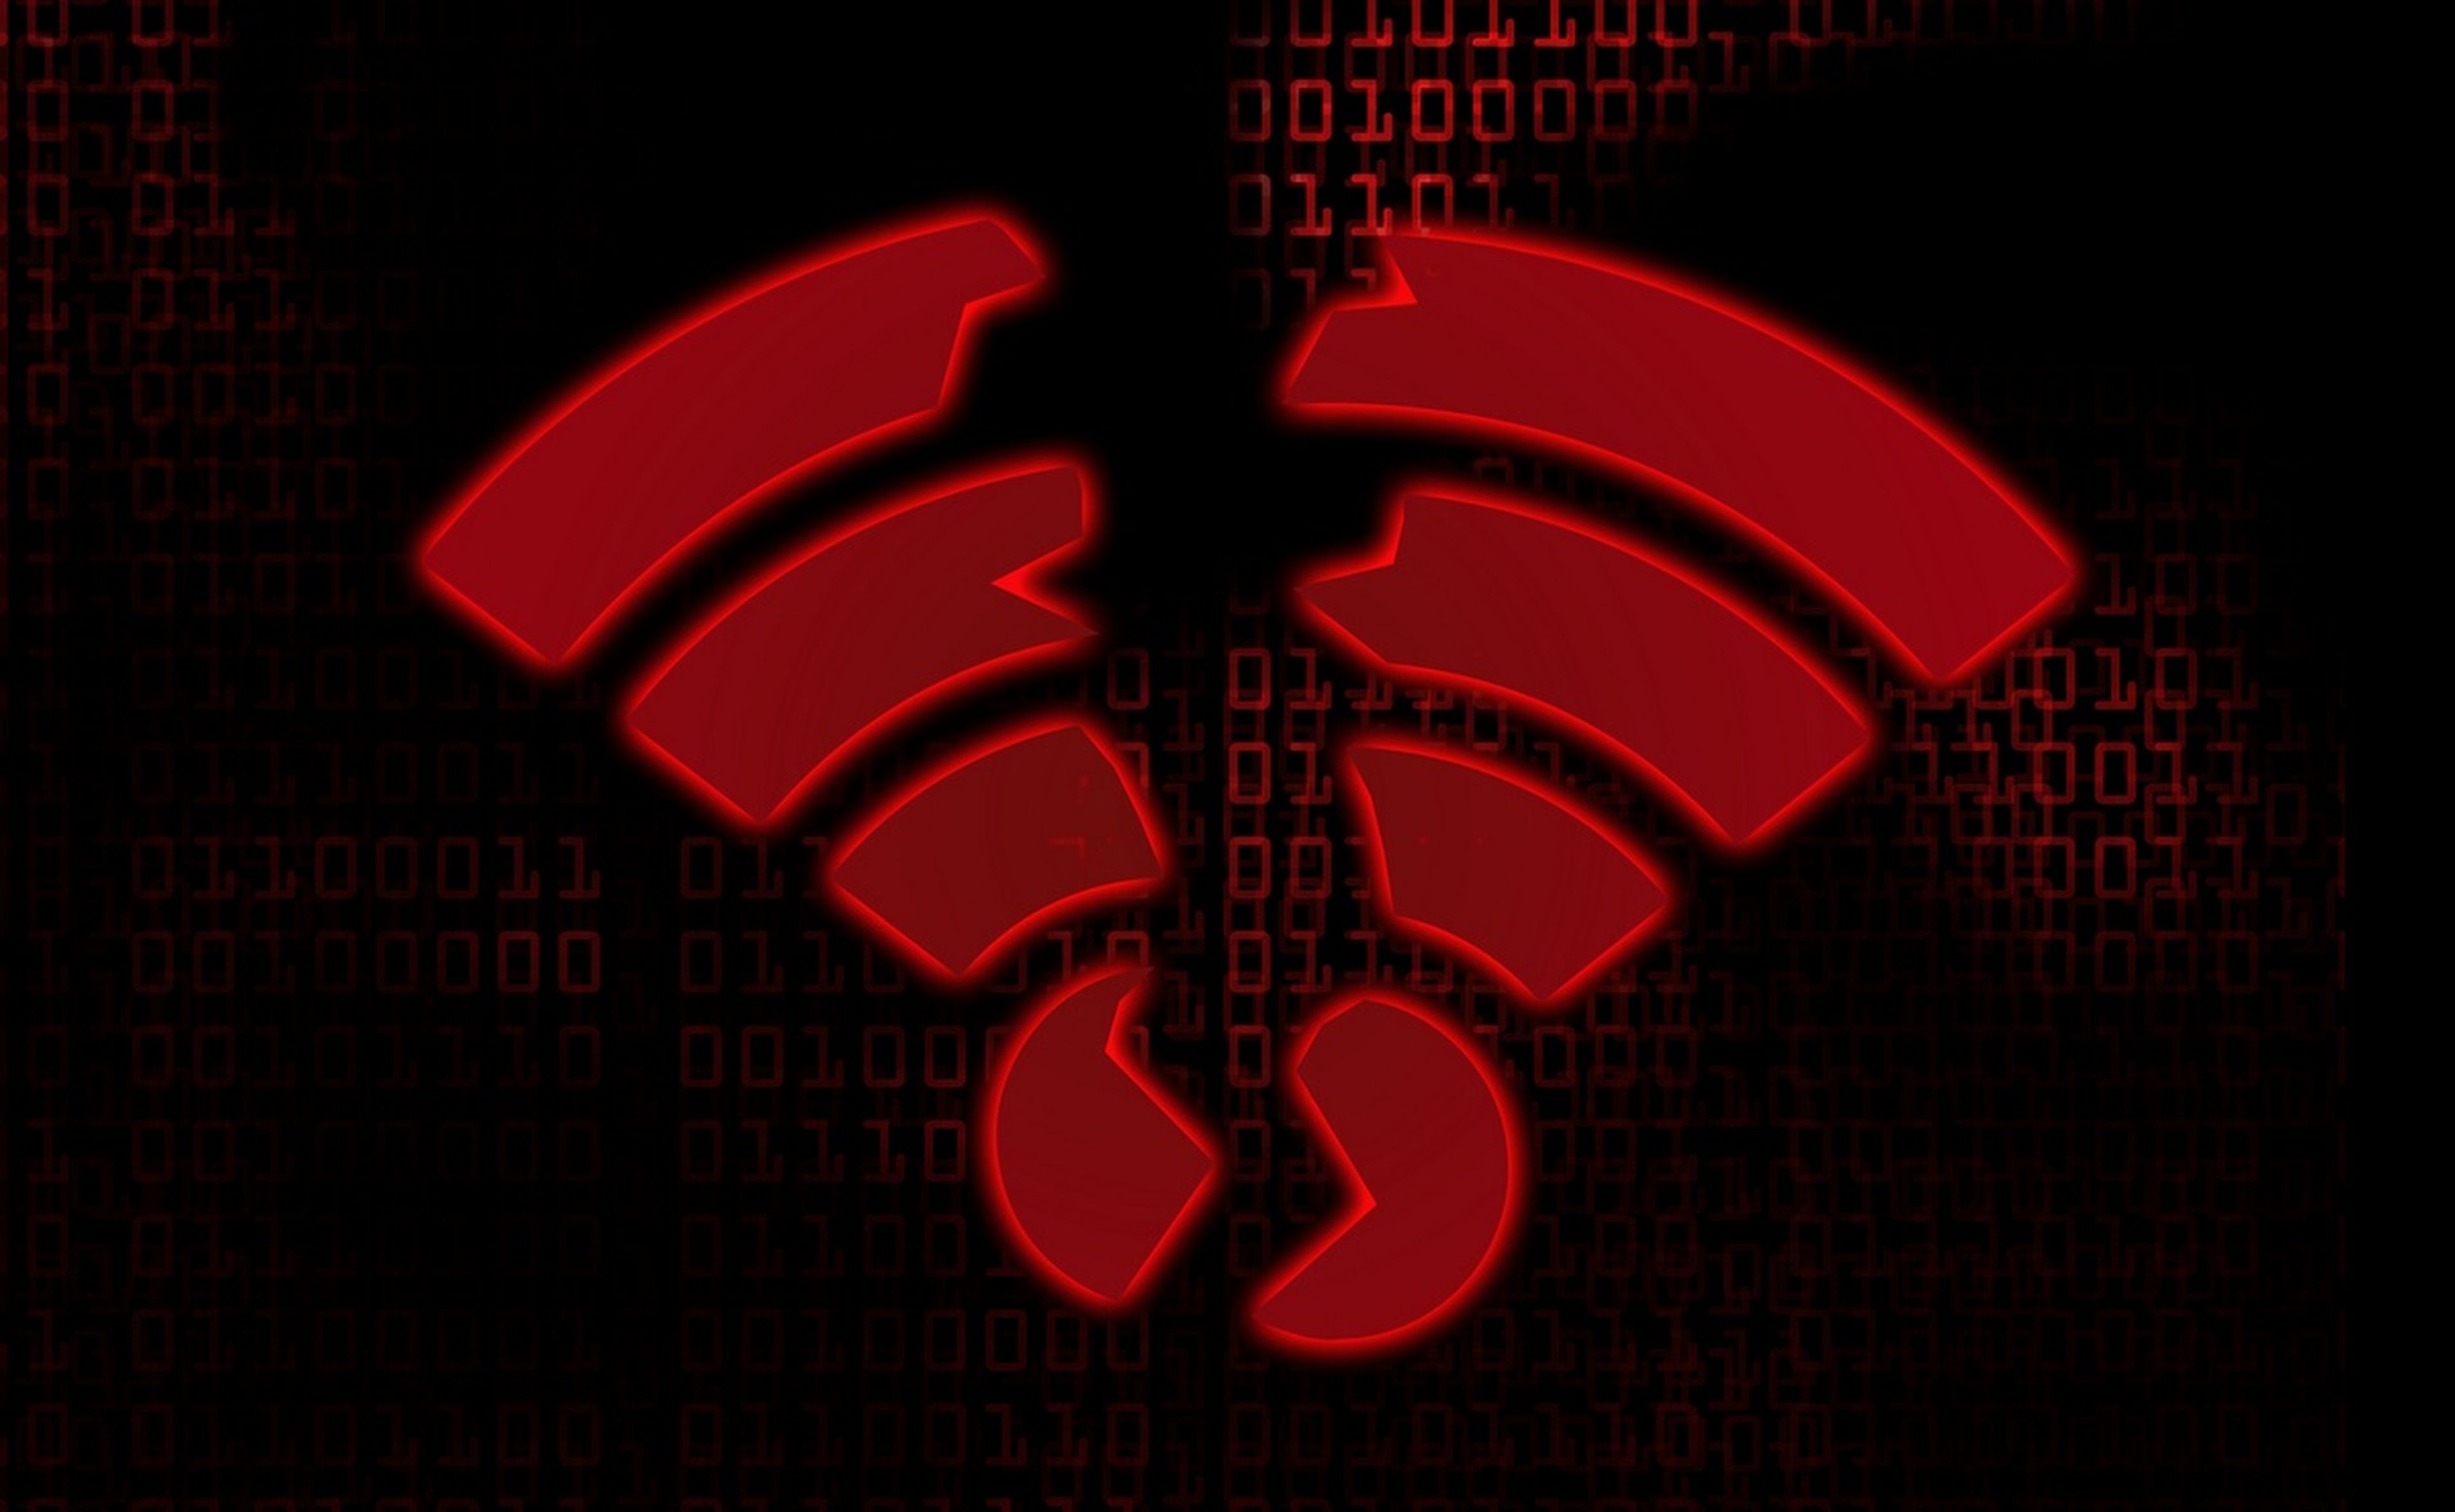 Un bug en el firmware pone en peligro miles de millones de dispositivos WiFi